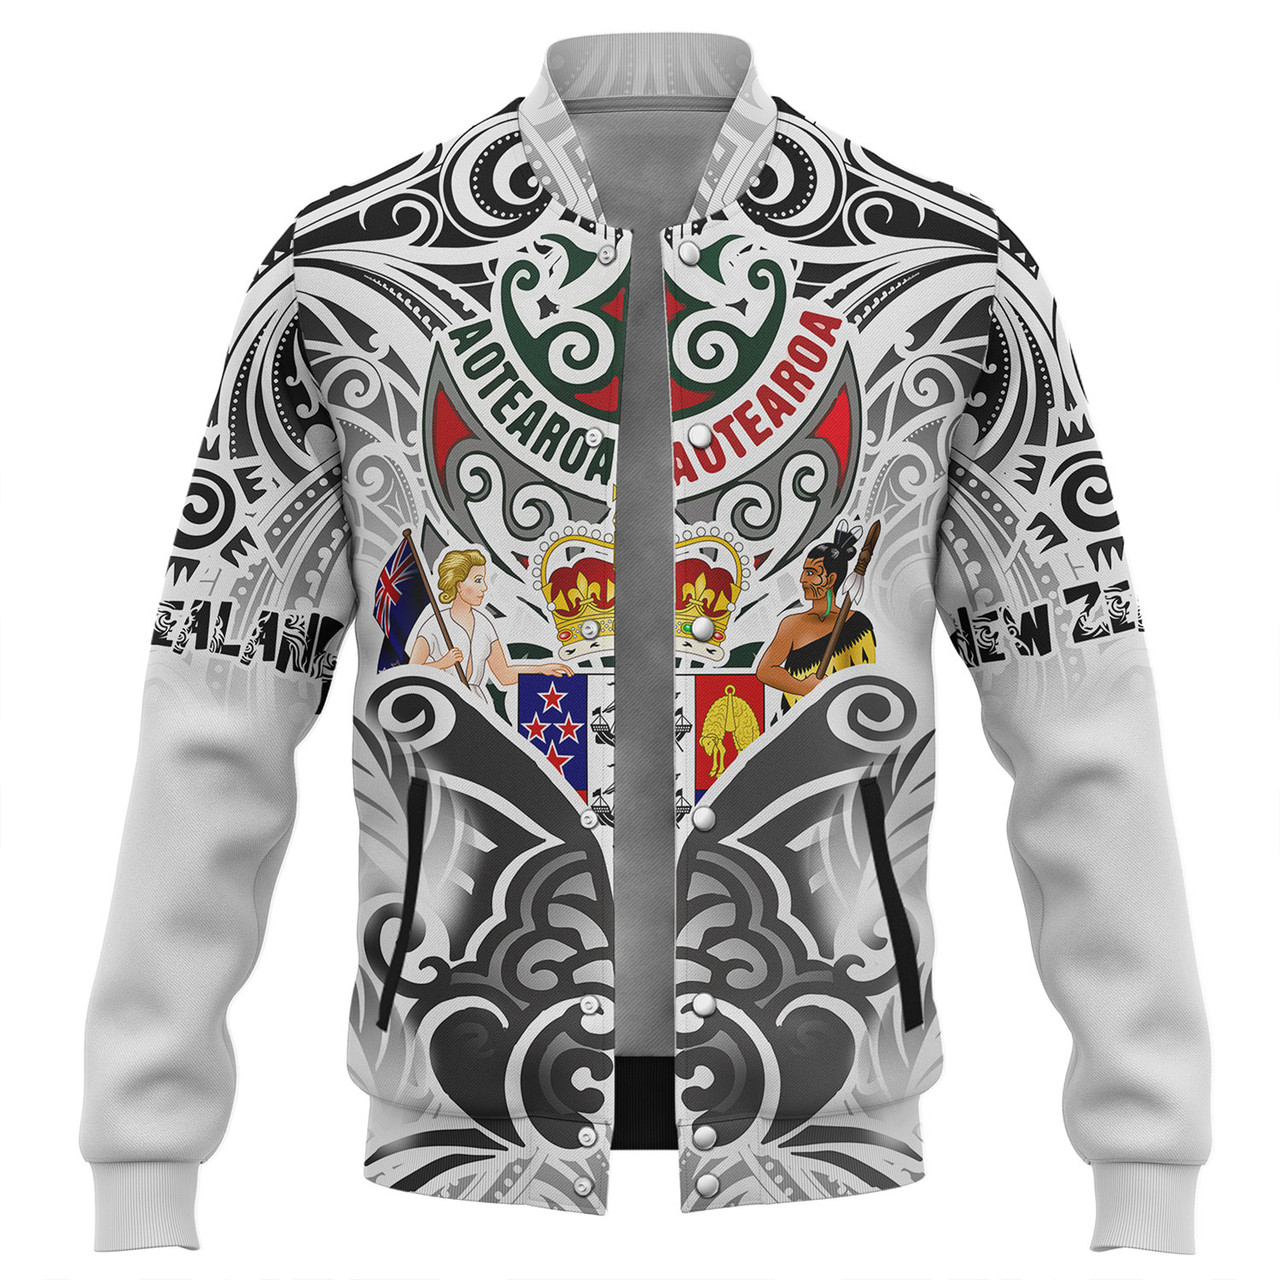 New Zealand Aotearoa Baseball Jacket Maori Traditional Hongi - The Breath Of Life Coat Of Arms Tribal Patterns